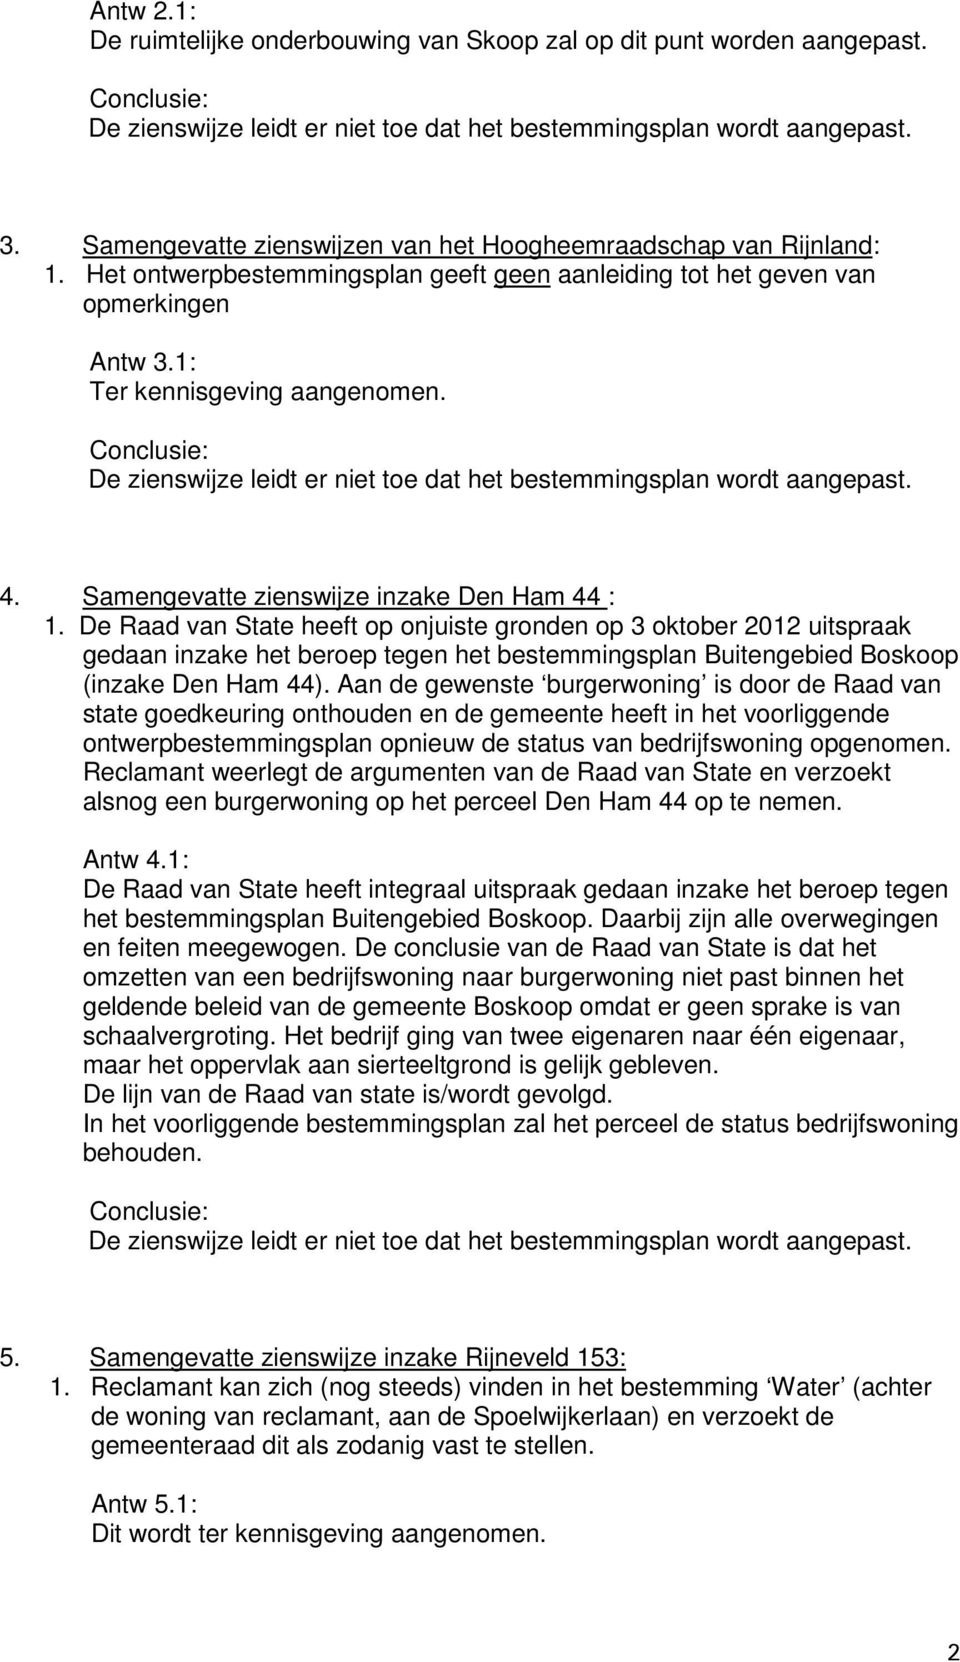 De Raad van State heeft op onjuiste gronden op 3 oktober 2012 uitspraak gedaan inzake het beroep tegen het bestemmingsplan Buitengebied Boskoop (inzake Den Ham 44).